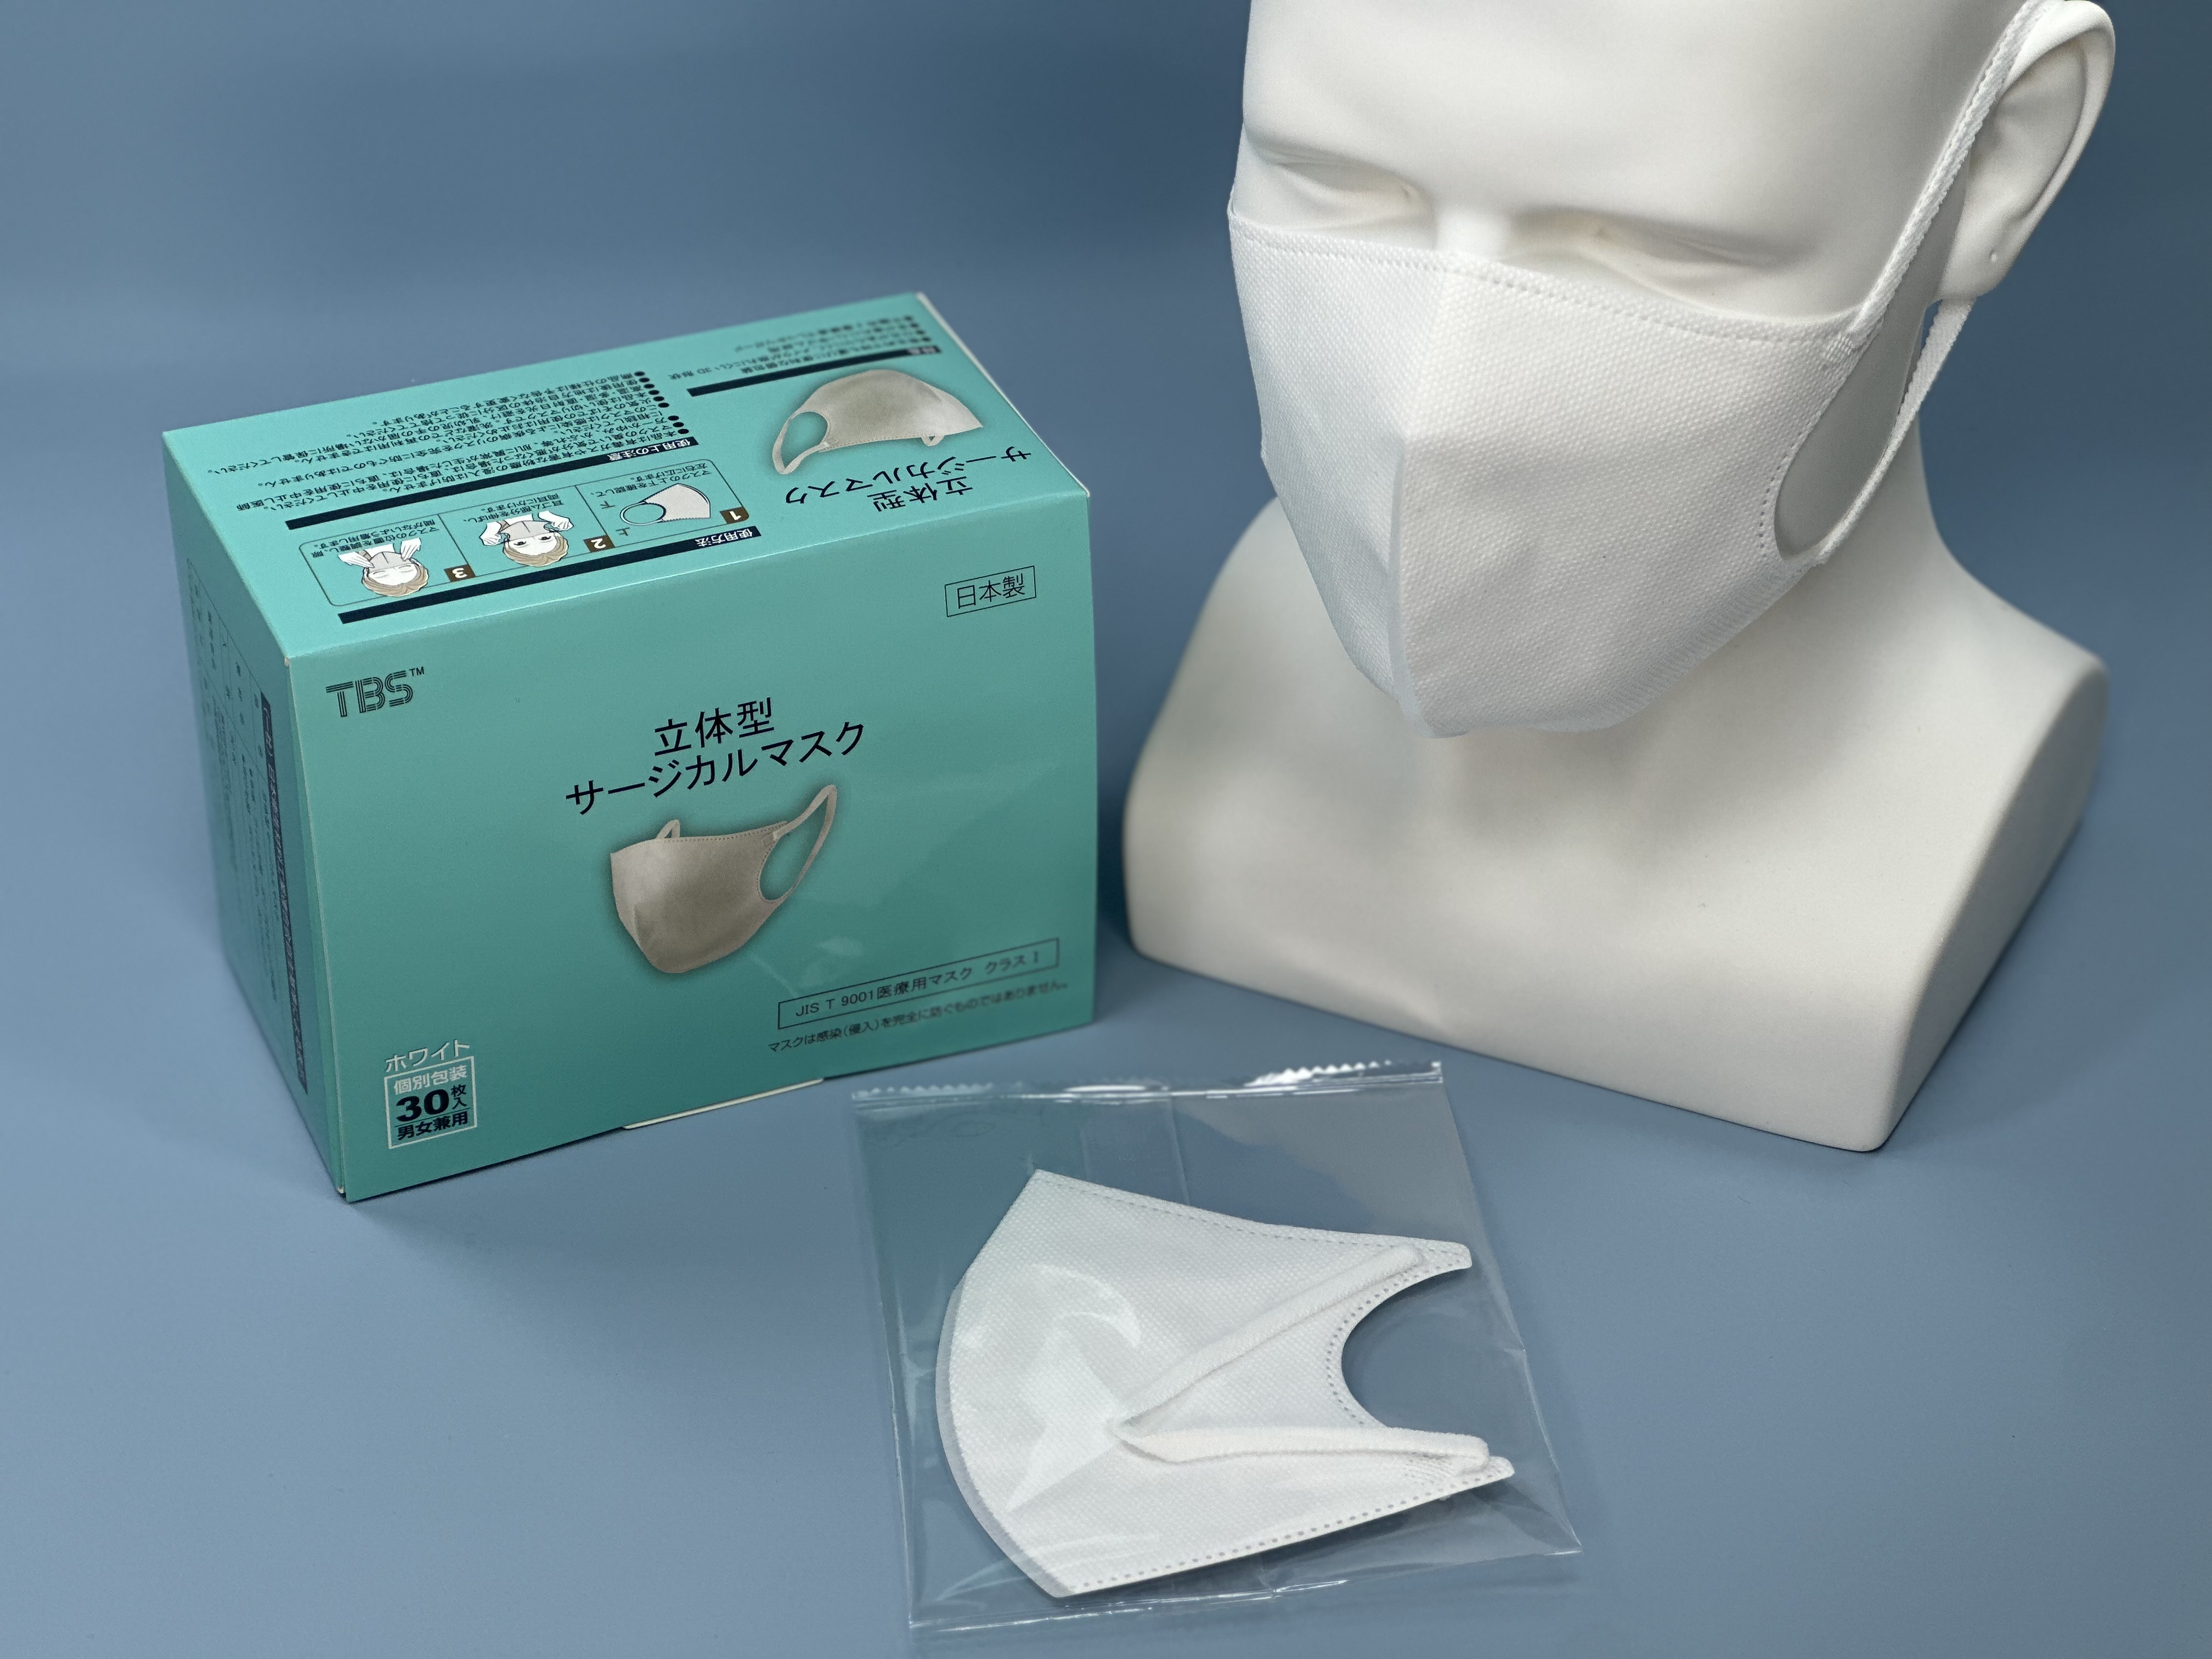 つばさ(Tsubasa) 日本製 TBS 立体型サージカルマスク・個包装・3層構造 (JIS T9001 医療用マスク クラスⅠ適合審査合格品) 医療用立体マスク ホワイト/フリーサイズ 1BOX-30枚入り